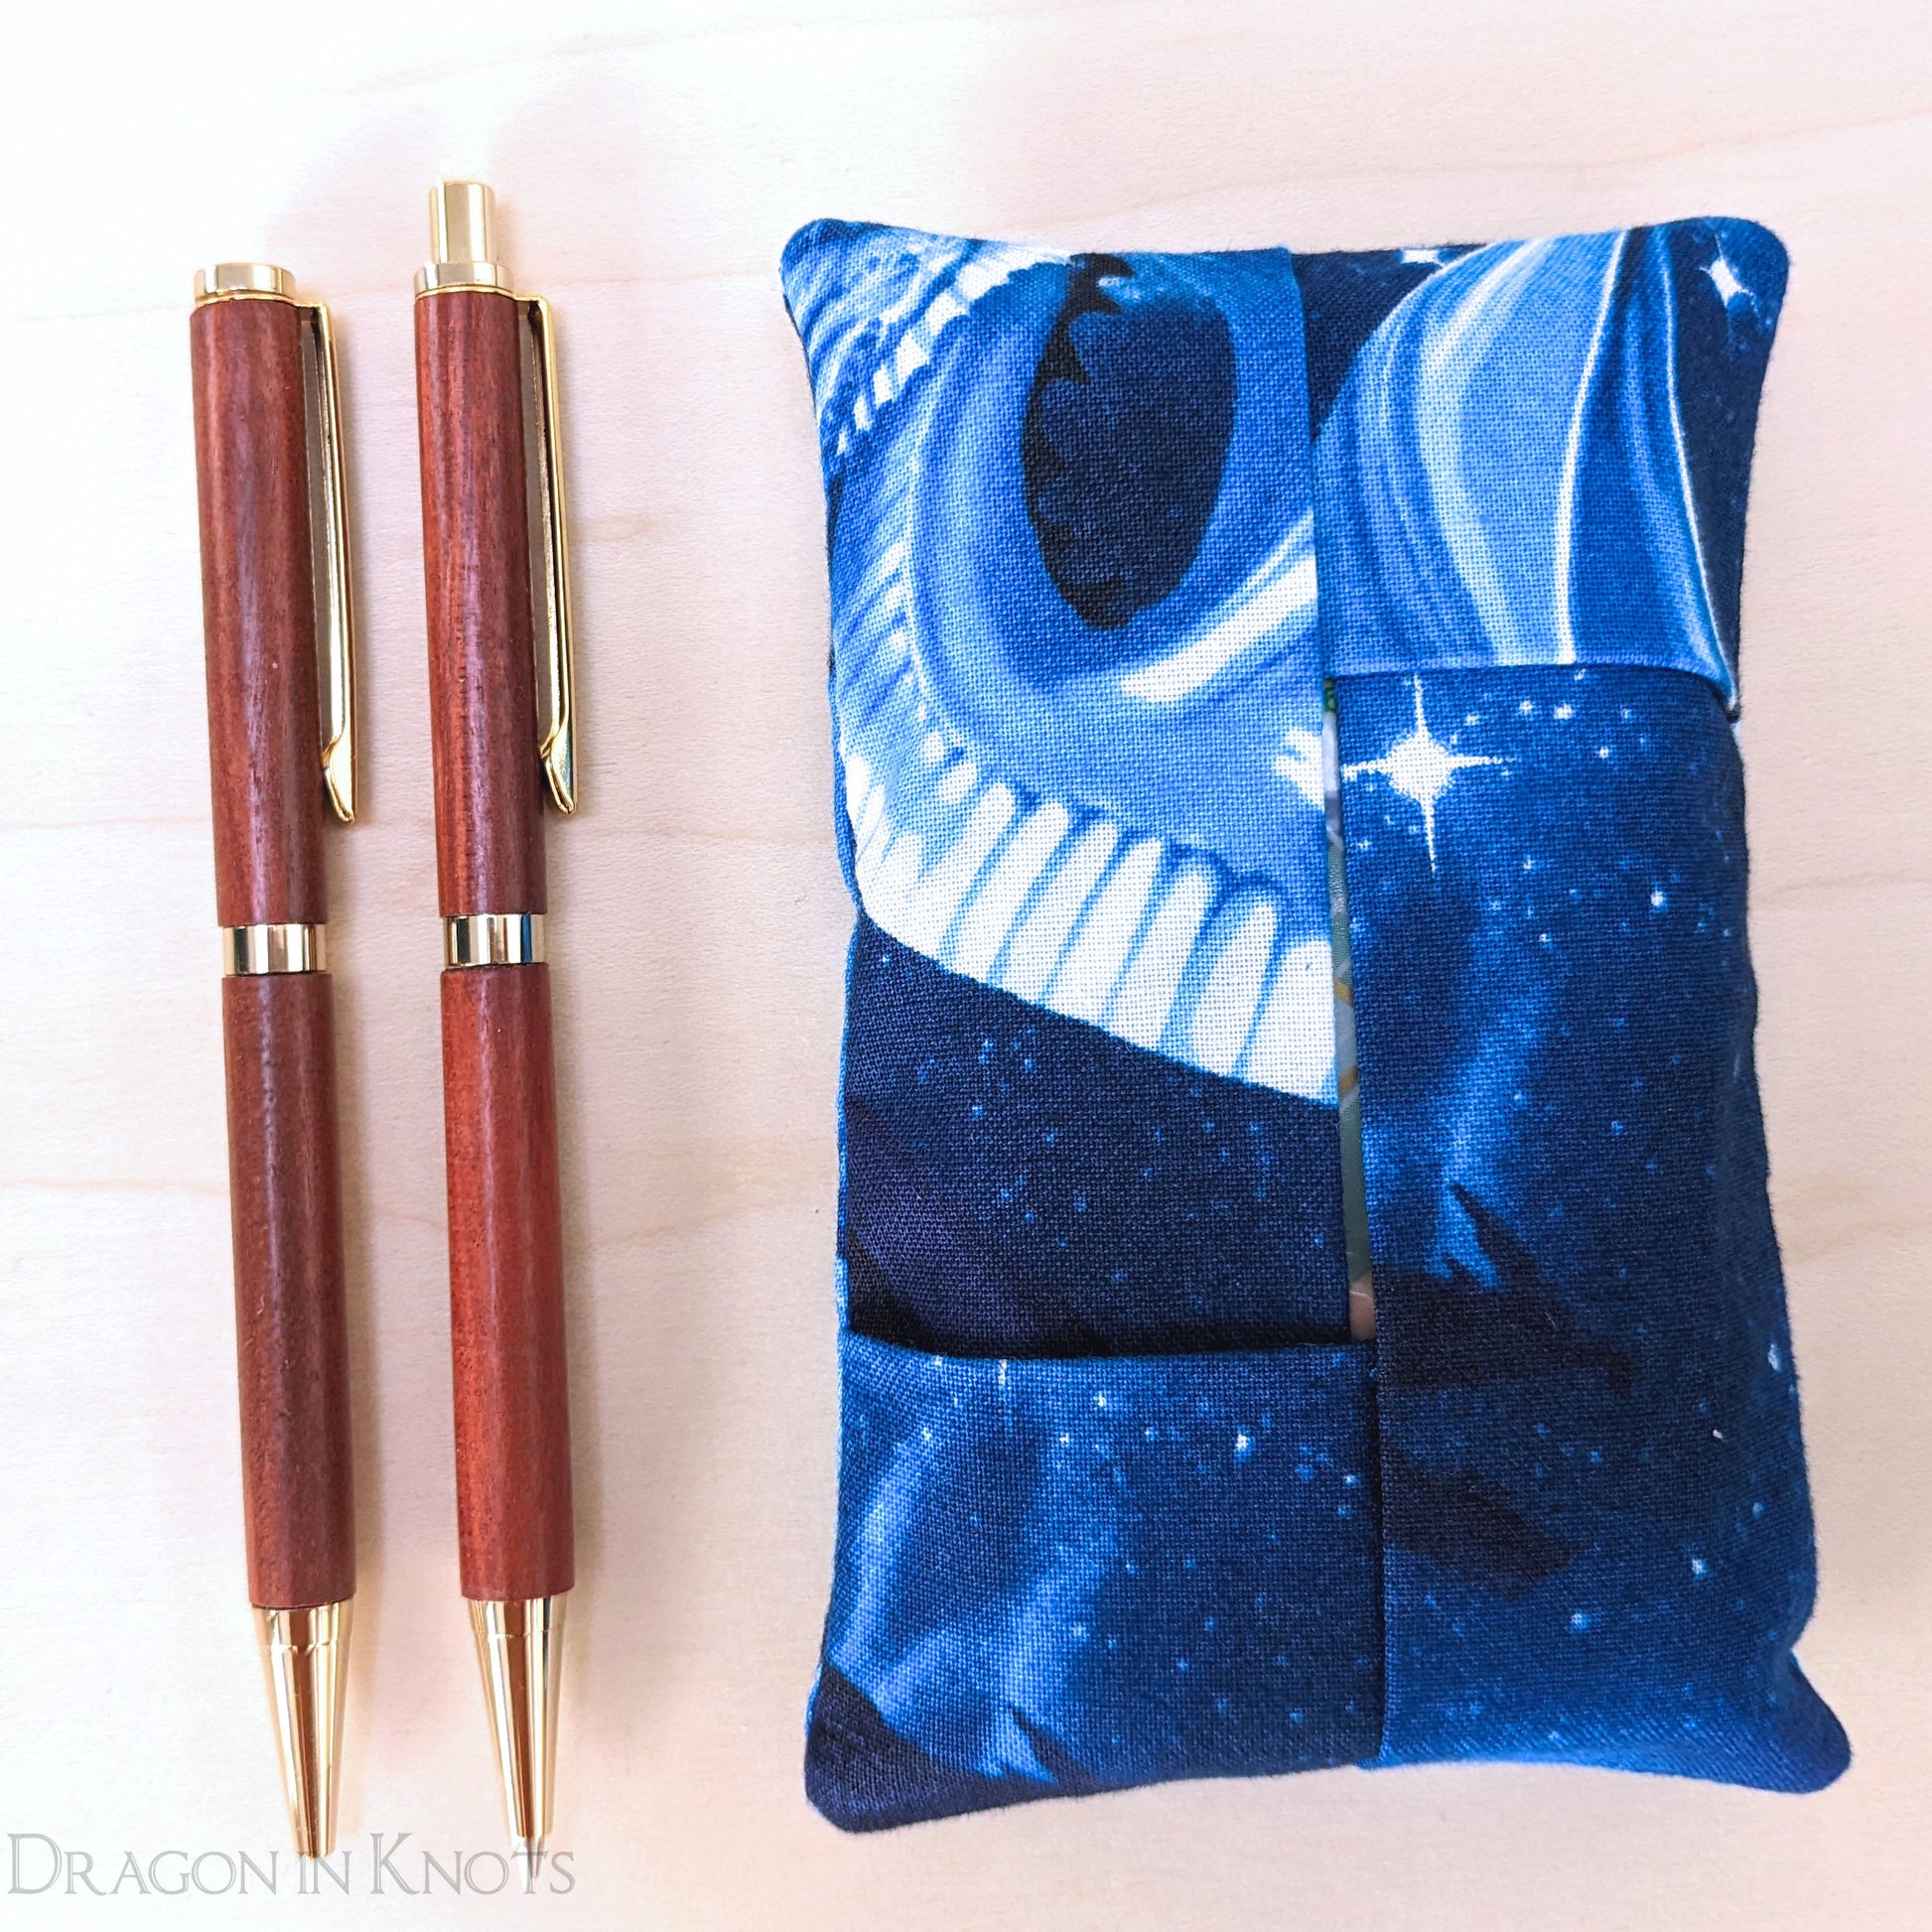 Blue Dragon Pocket Tissue Holder - Dragon in Knots handmade